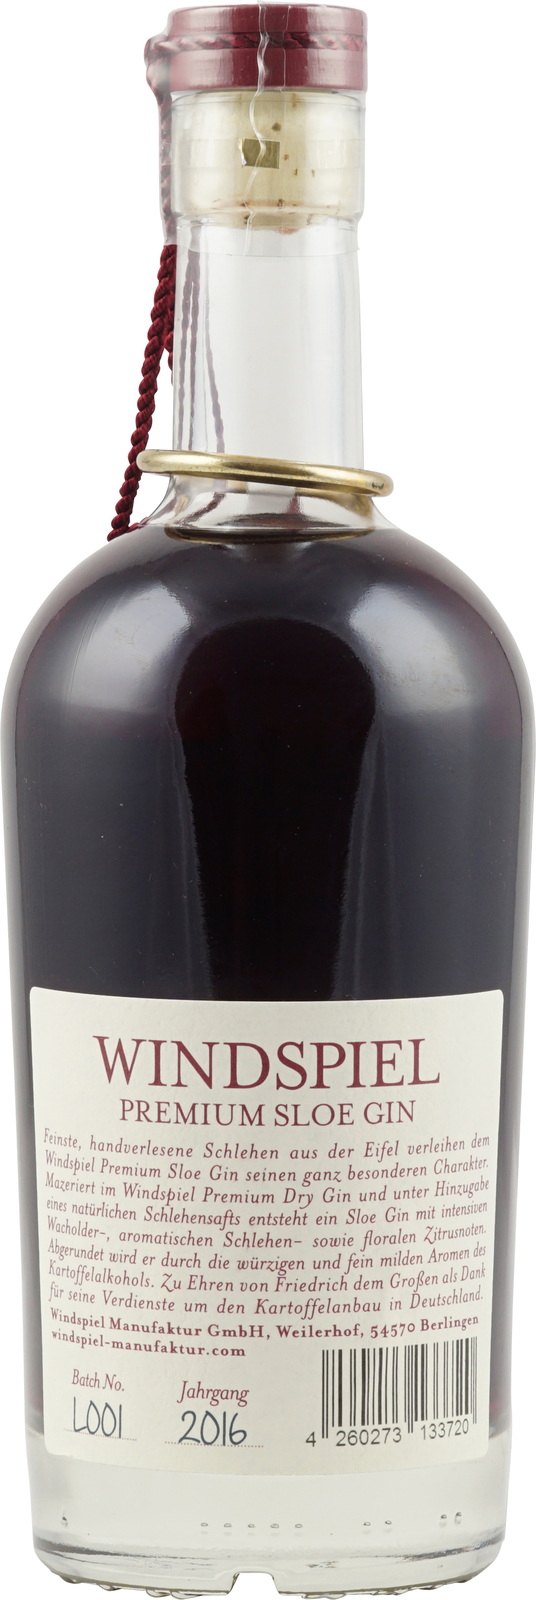 33,3 % 0,5 Windspiel Sloe Gin Liter Premium